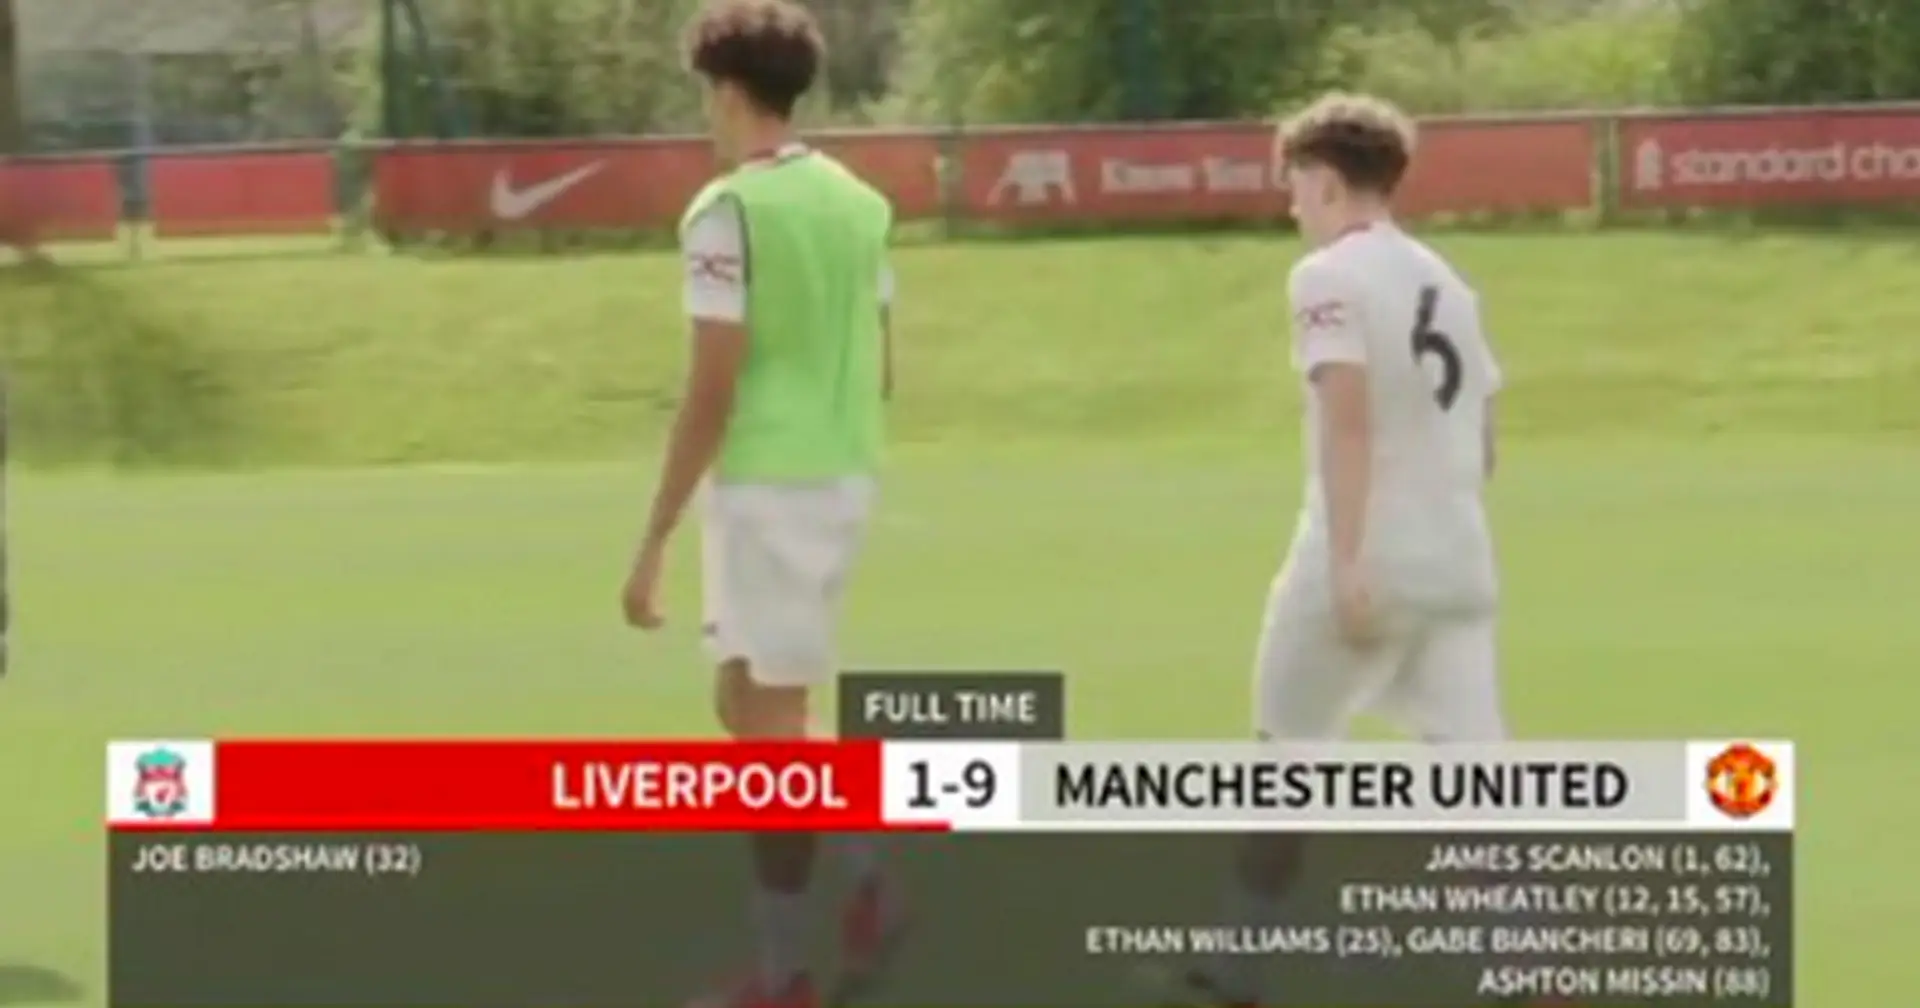 Man United thrash Liverpool 9-1 in U18 Premier League